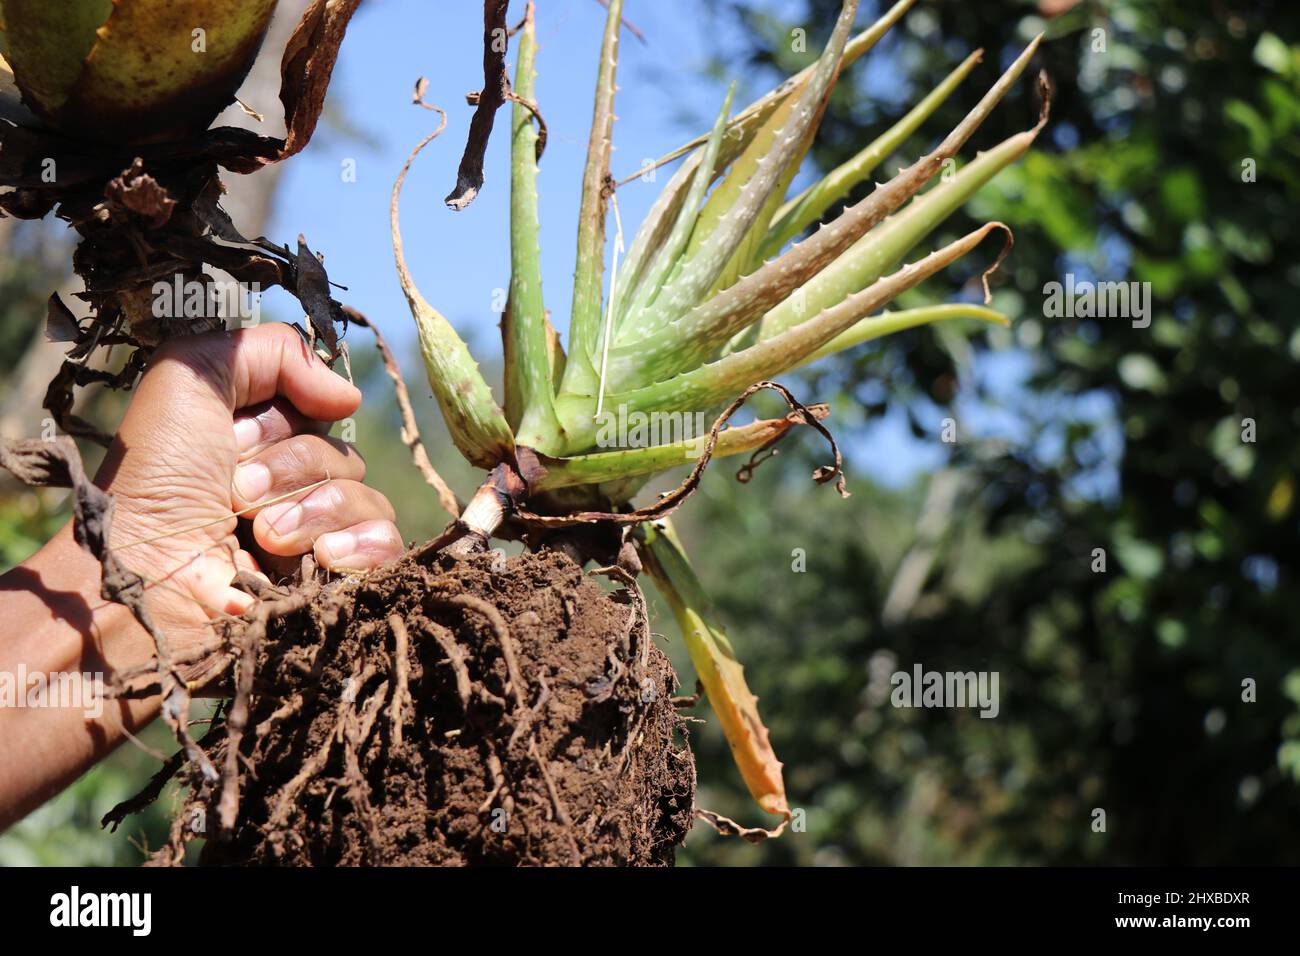 Le système racine d'une plante d'Aloe vera après avoir été tiré d'un pot de jardin. L'aloe vera est cultivé pour sa propriété médicinale Banque D'Images